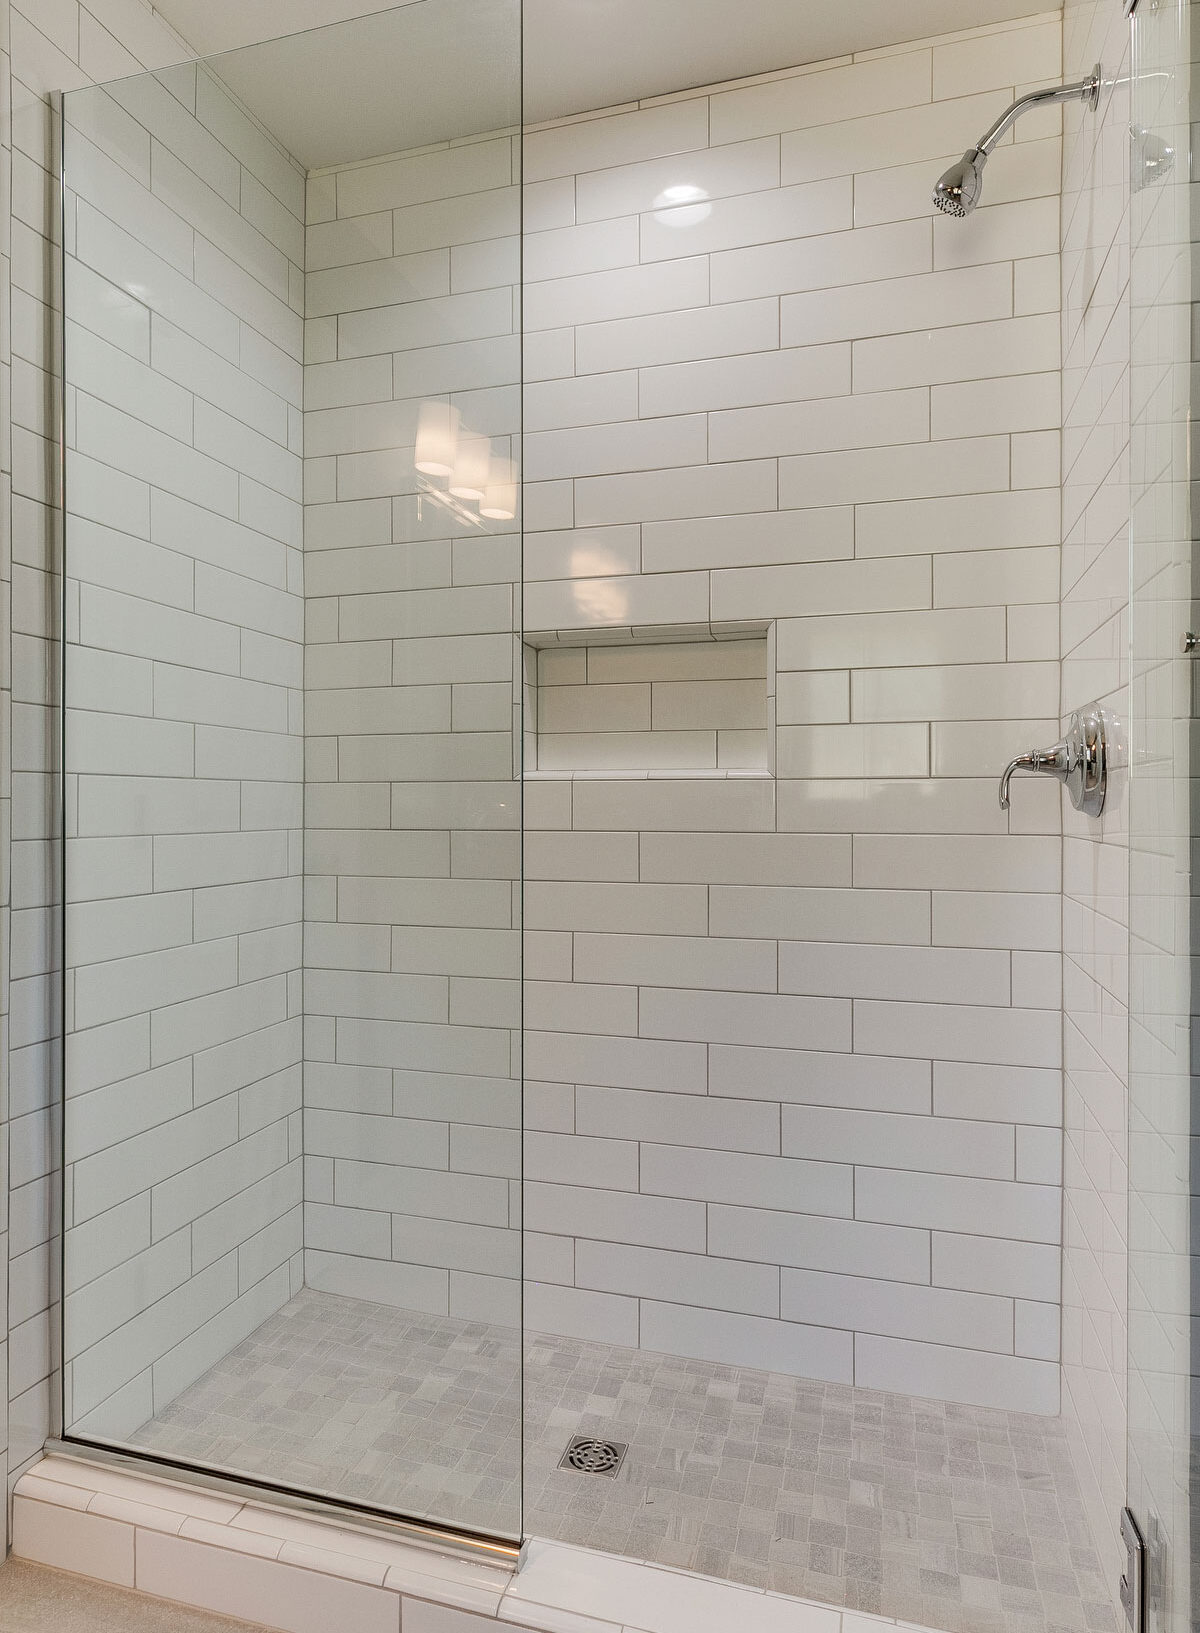 trumark construction custom home tile shower